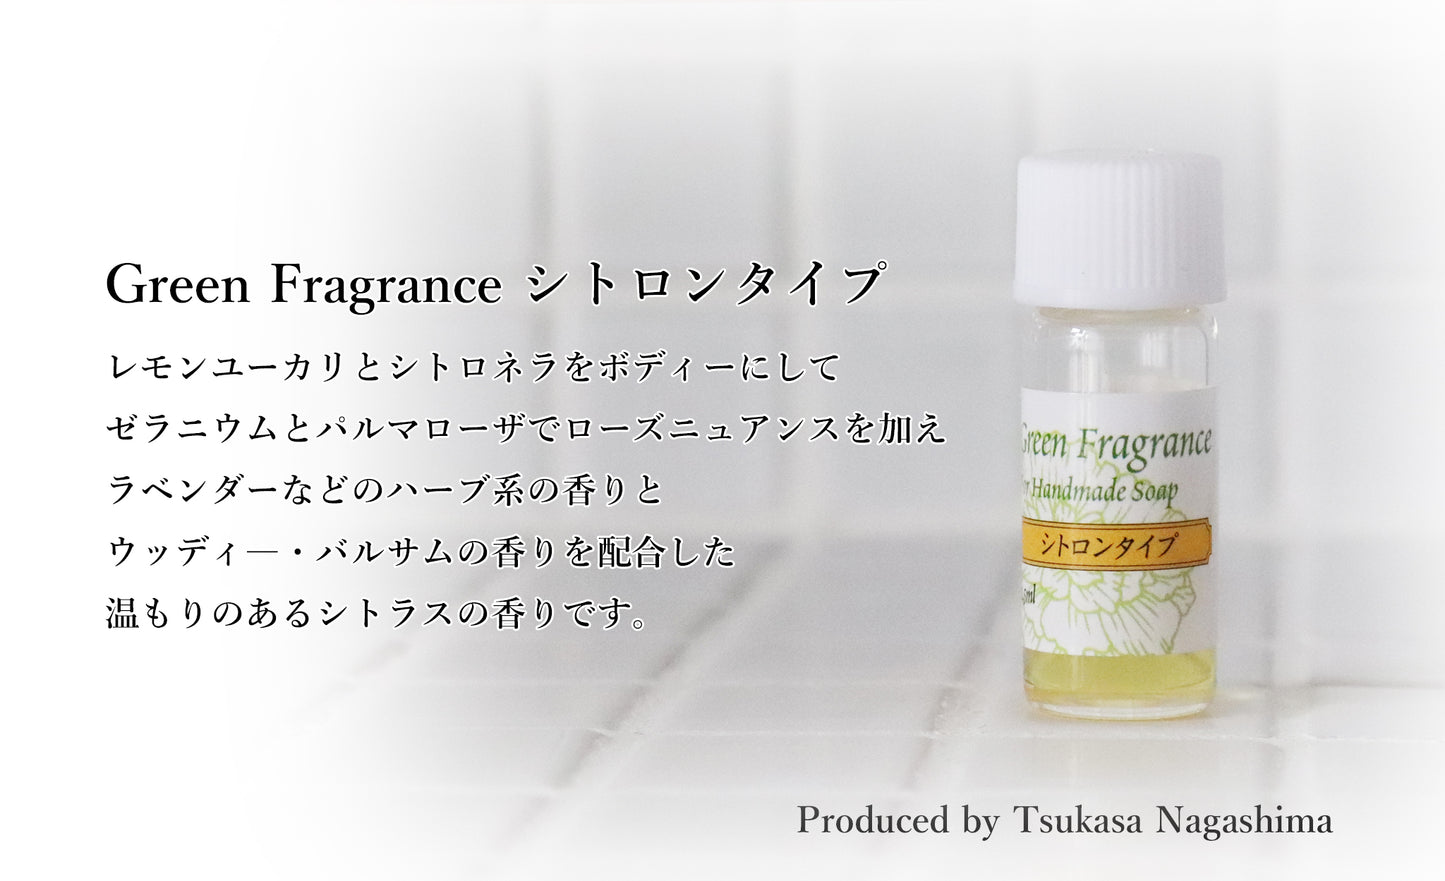 ブレンド精油 Green Fragrance by Tsukasa Nagashima